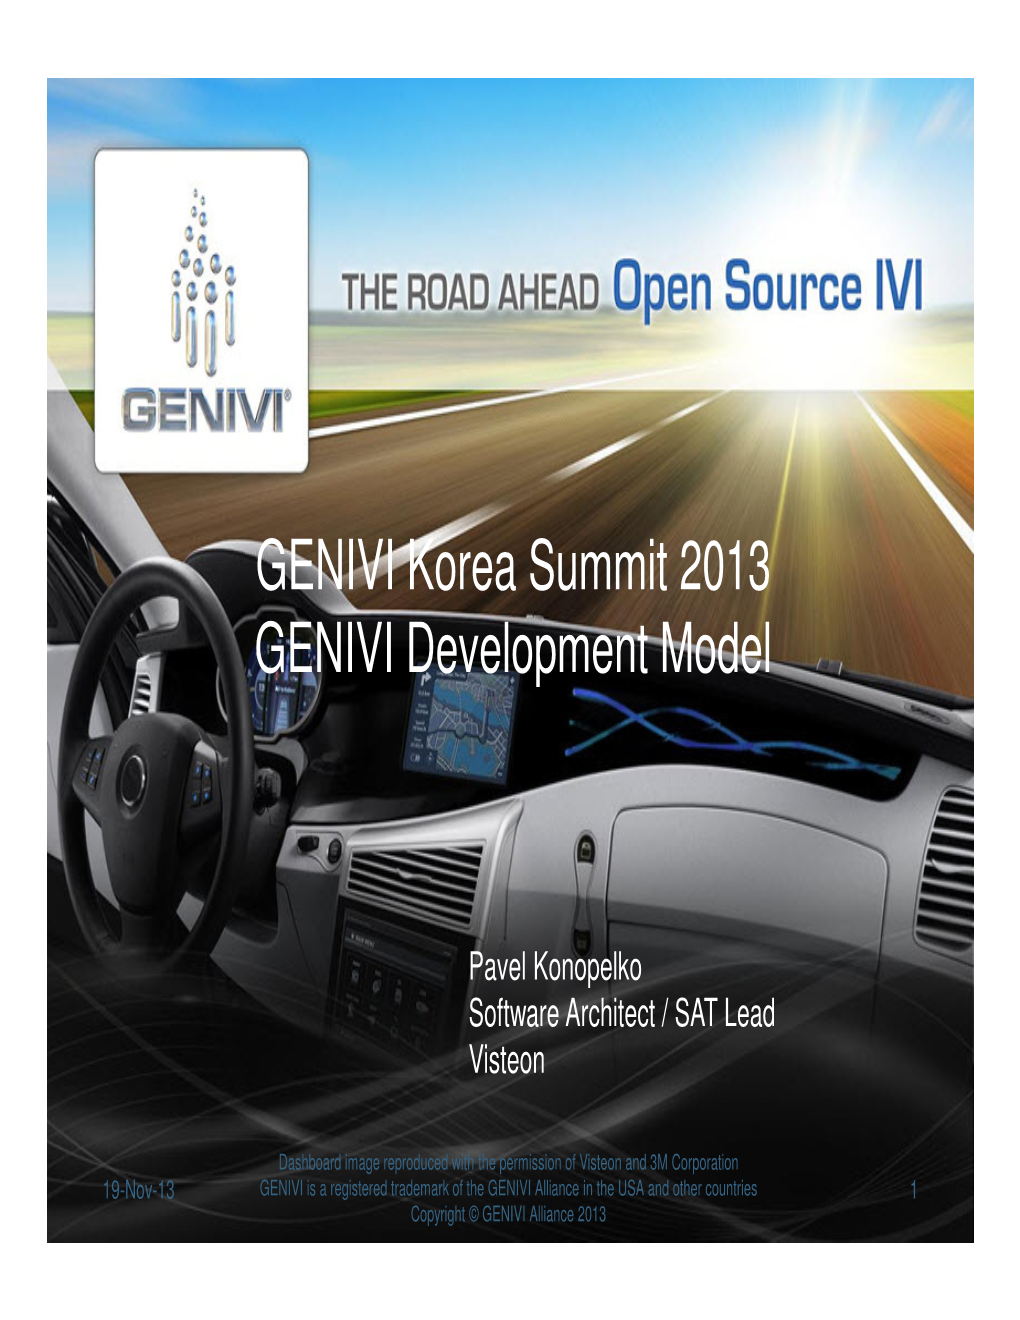 GENIVI Korea Summit 2013 GENIVI Development Model